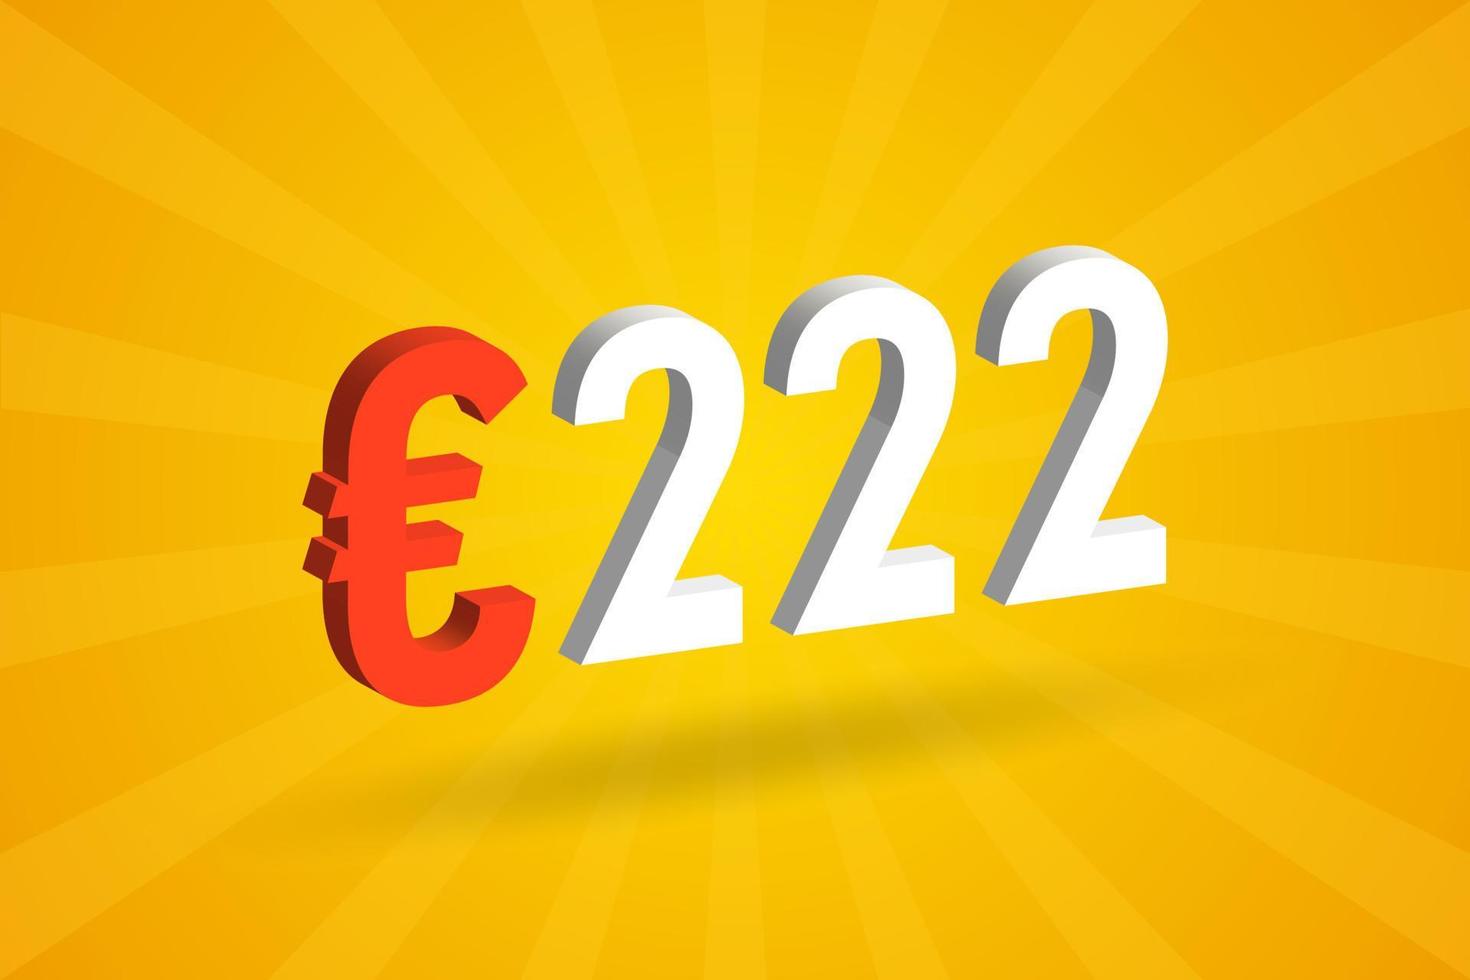 Symbole de texte vectoriel 3d de devise de 222 euros. 3d 222 euro union européenne argent vecteur de stock